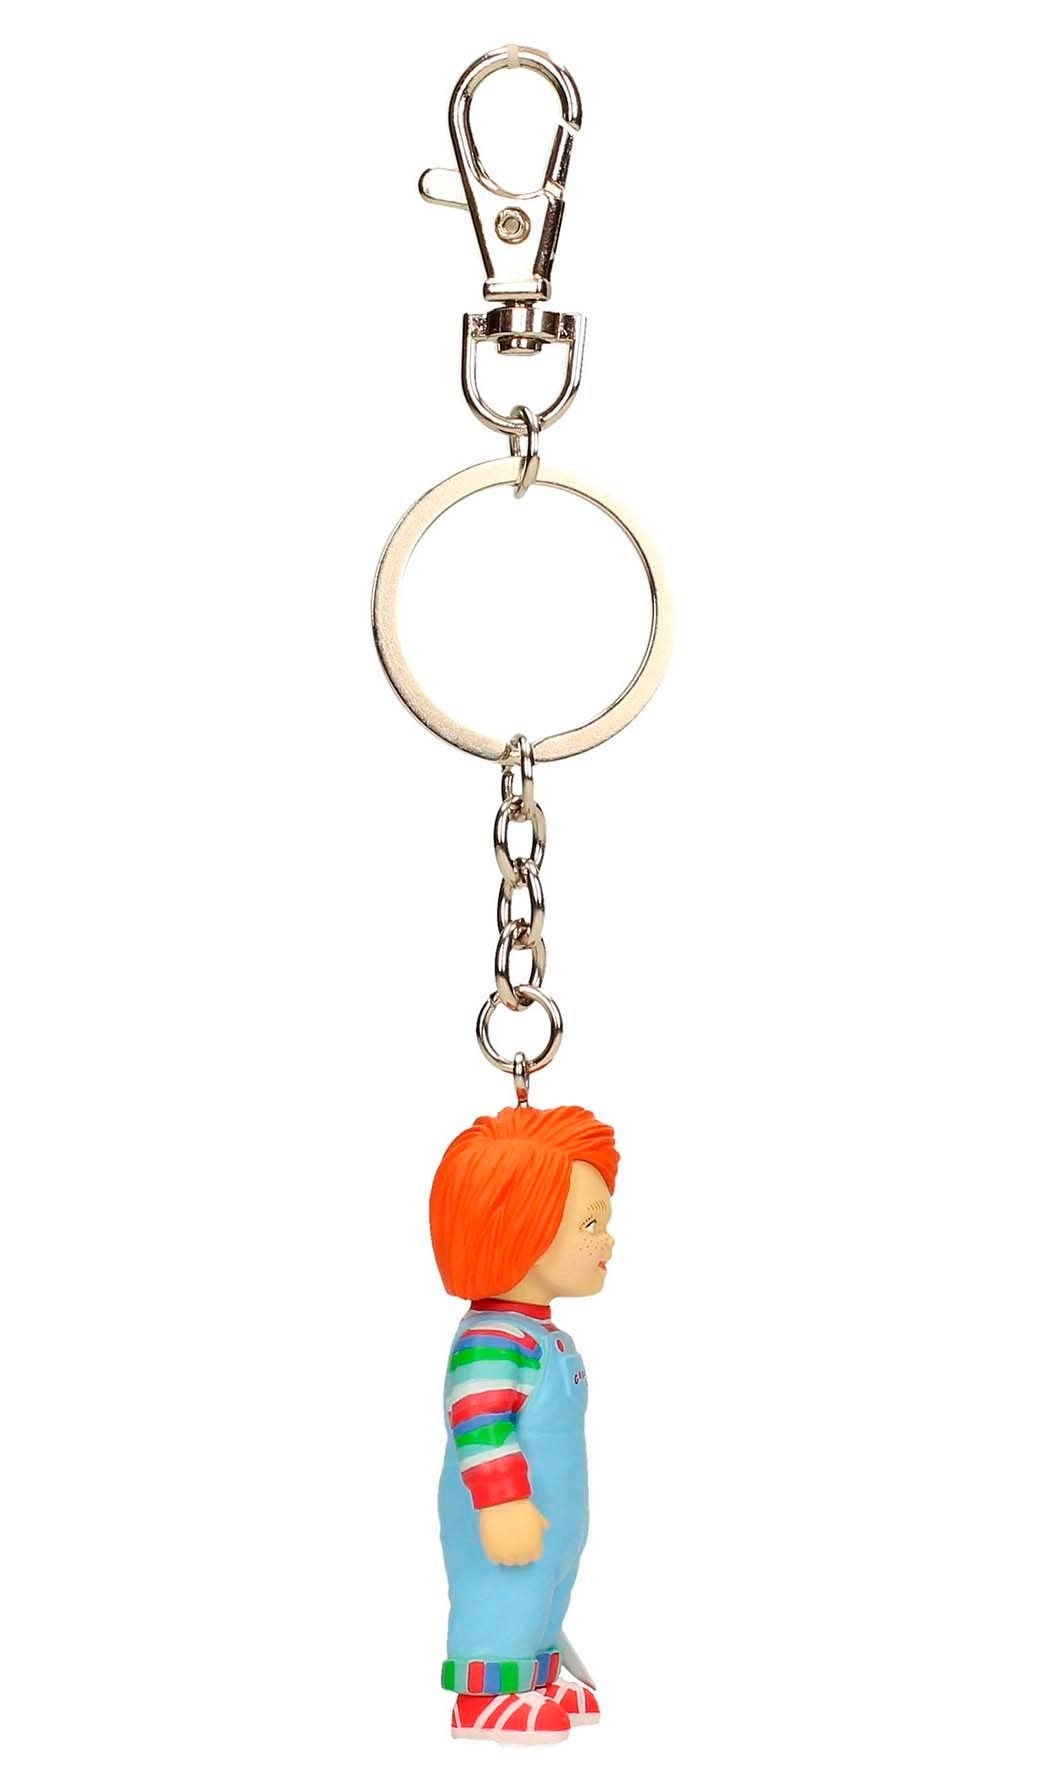 SD Toys Schlüsselanhänger Chucky Schlüsselanhänger Chucky 3D